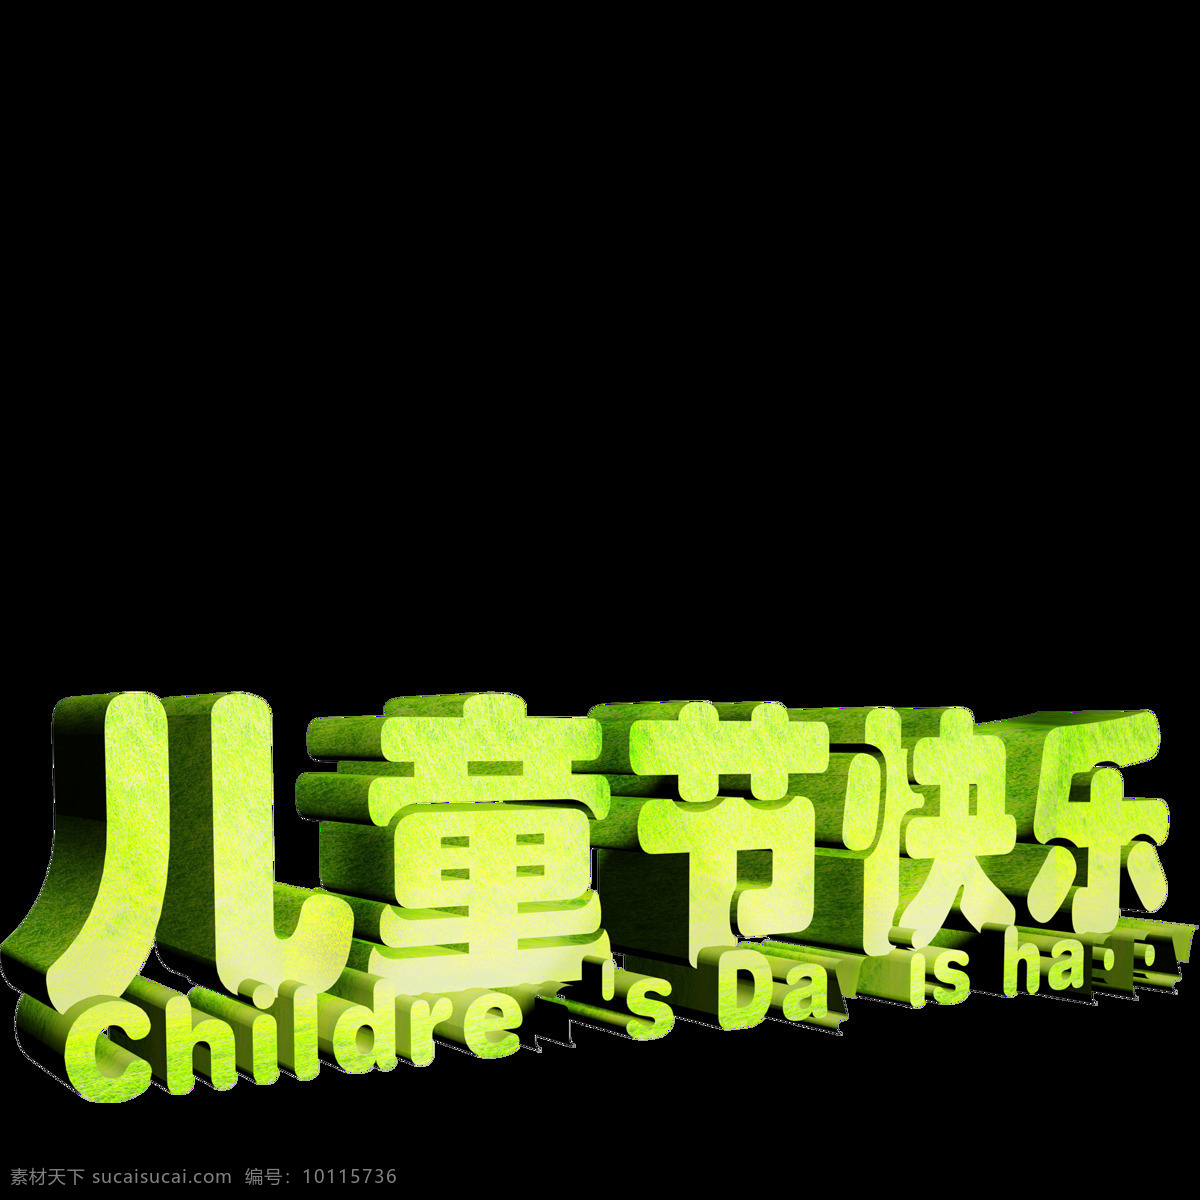 唯美 六一儿童节 标题 绿色标题 欢乐六一 创意设计 鲜明 形象